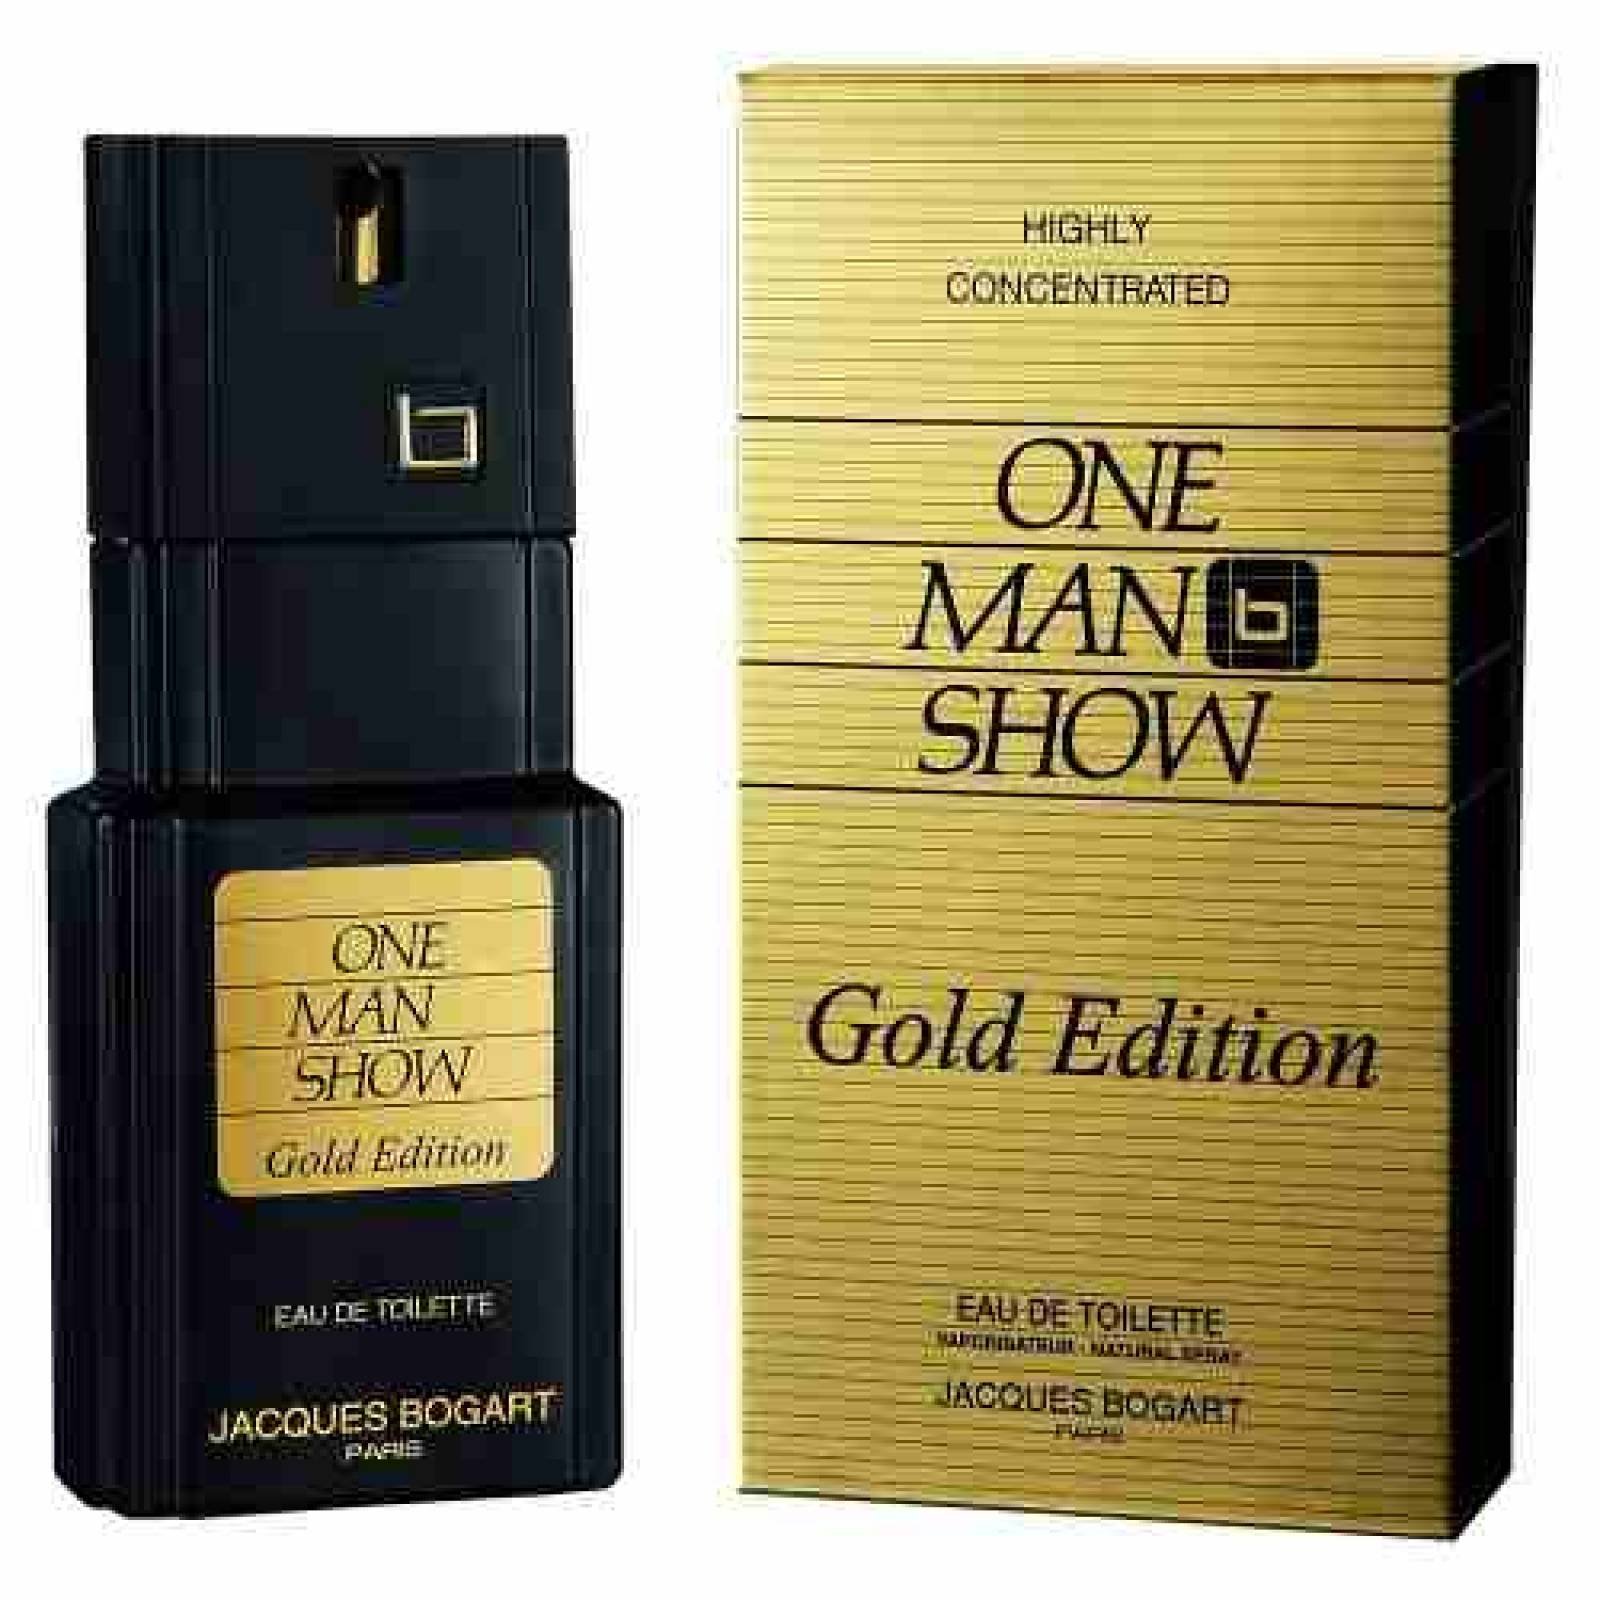 One Man Show Gold Edition Men 100 Ml Jacques Bogart Paris